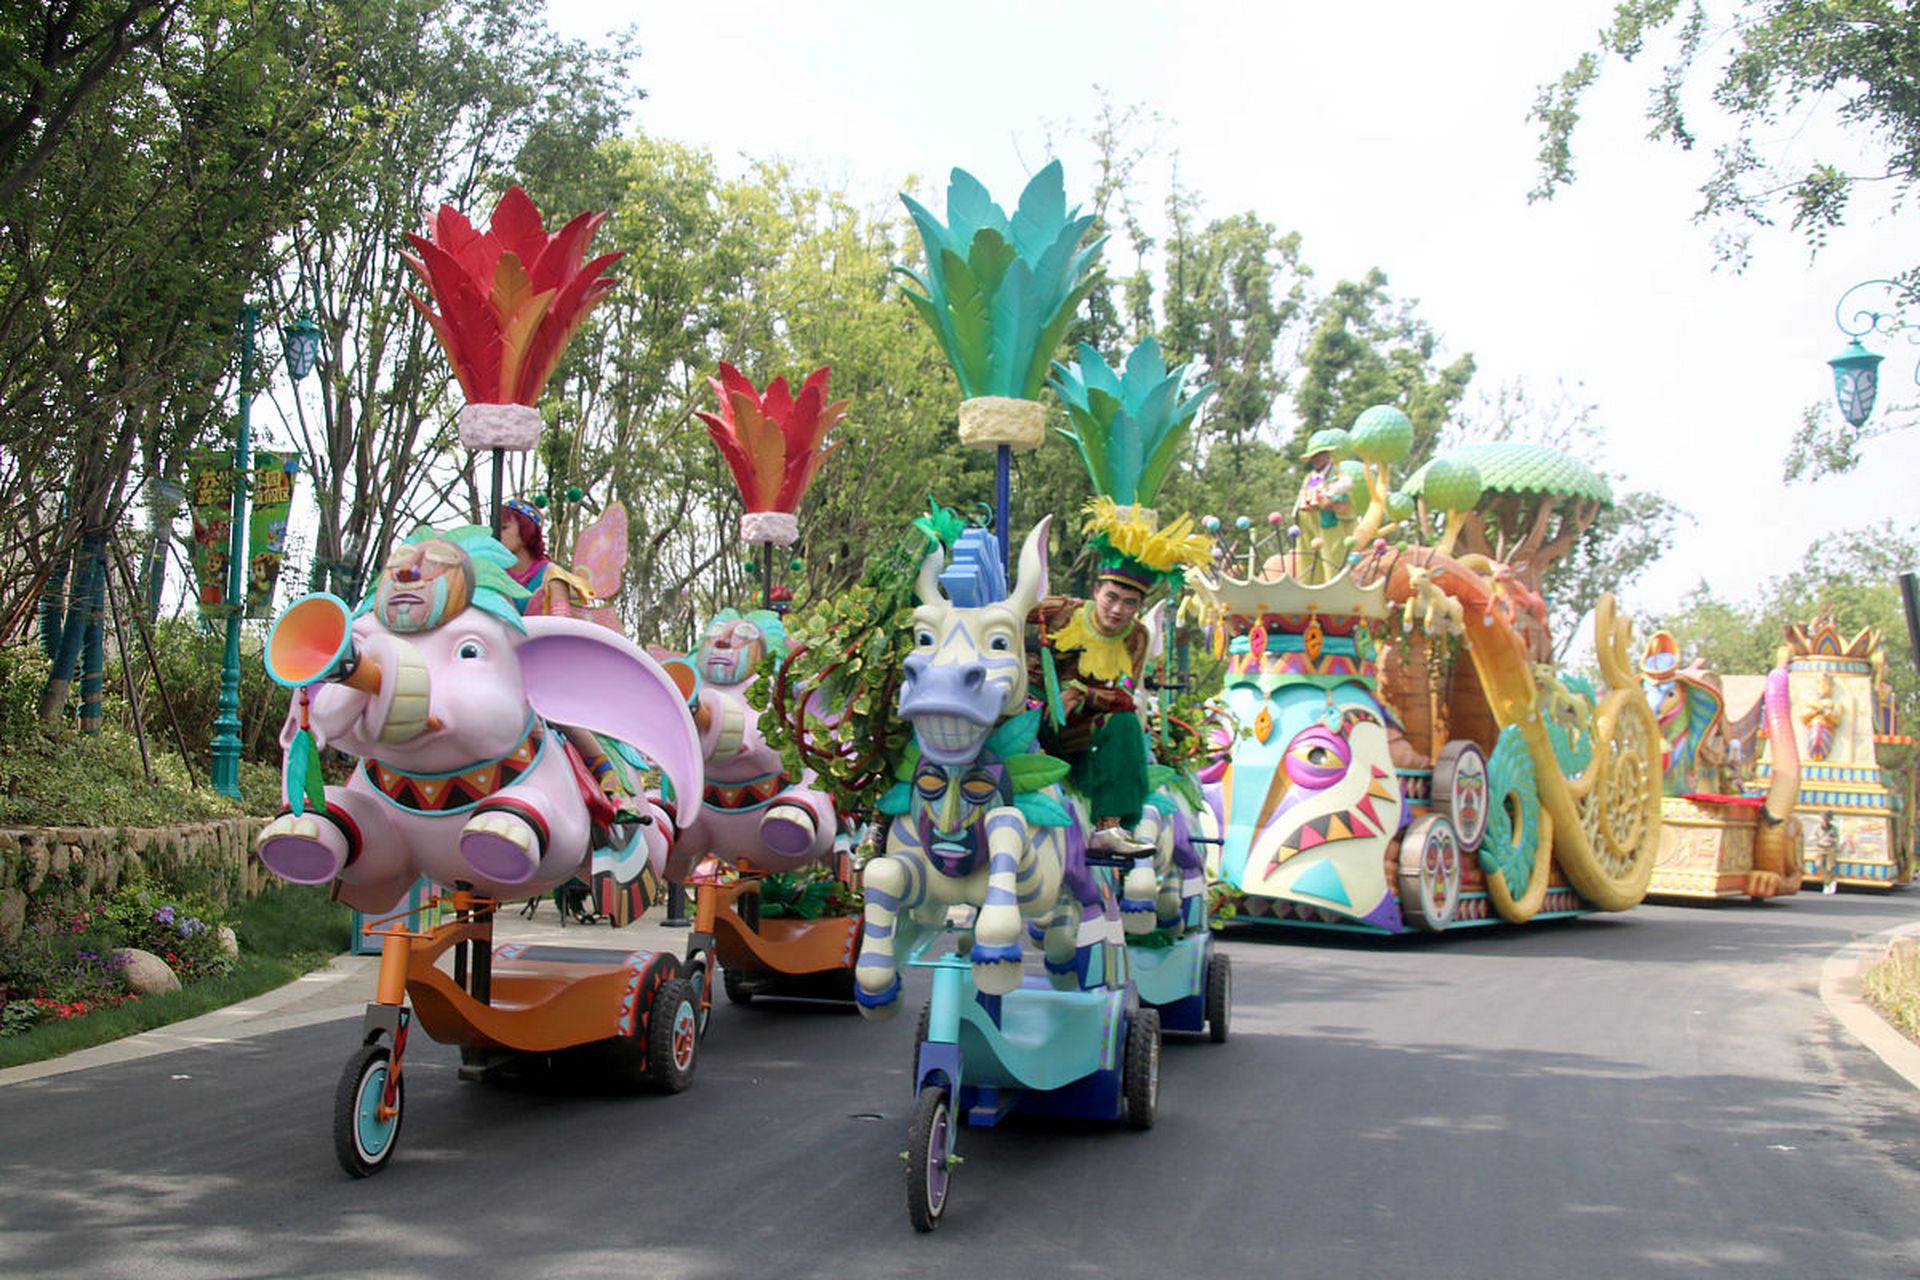 大同方特游乐园是一个位于山西省大同市的大型主题乐园,游乐园内的